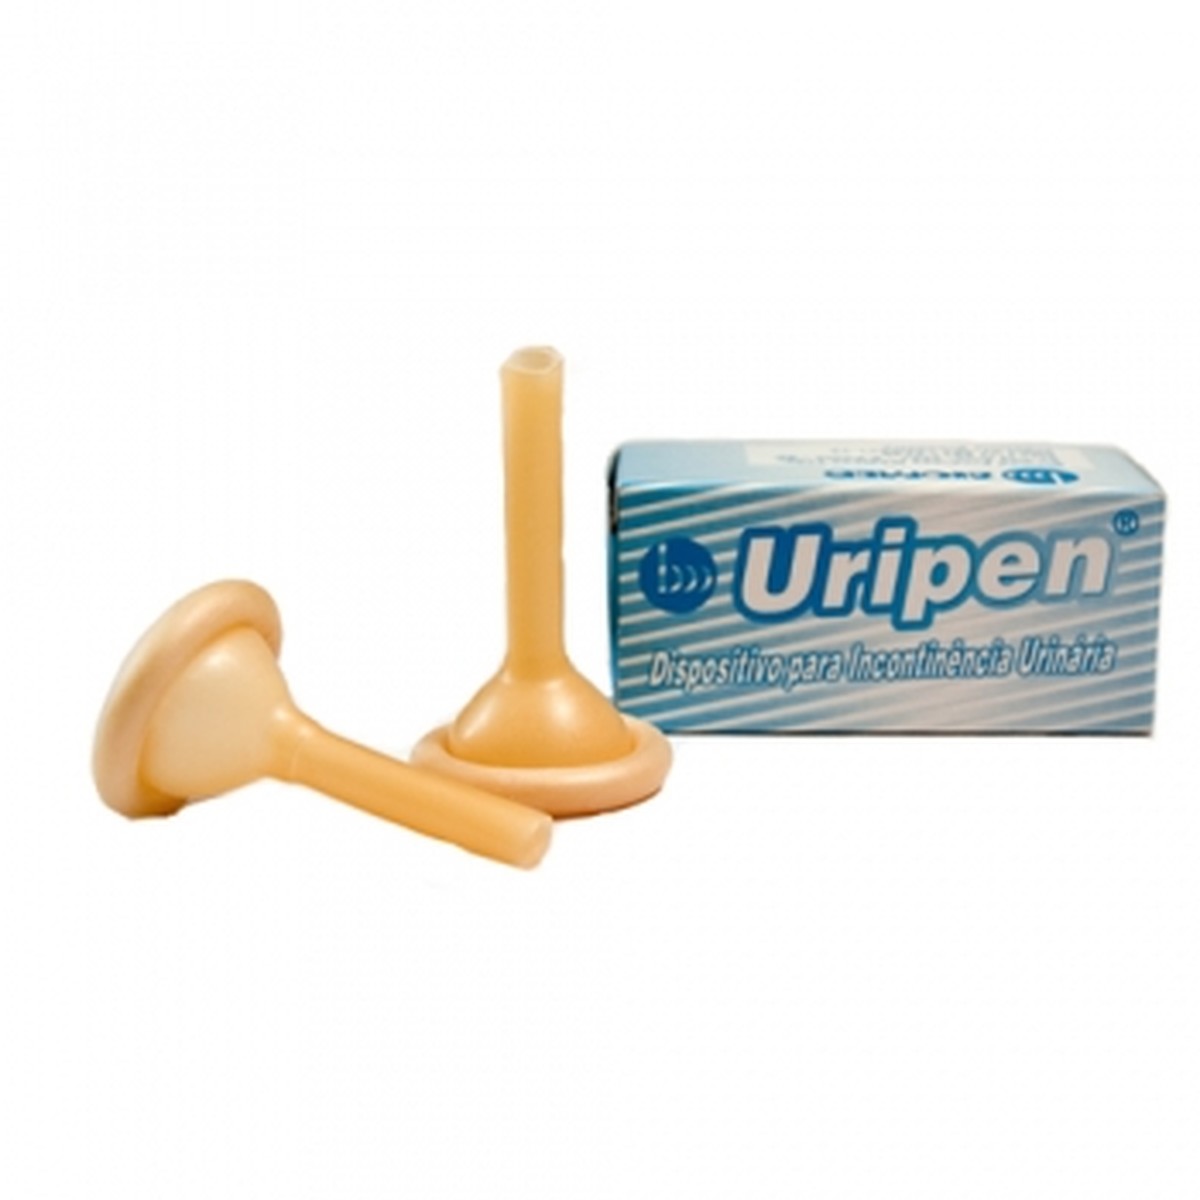 Foto do produto Uripen - Dispositivo para Incontinência Urinária